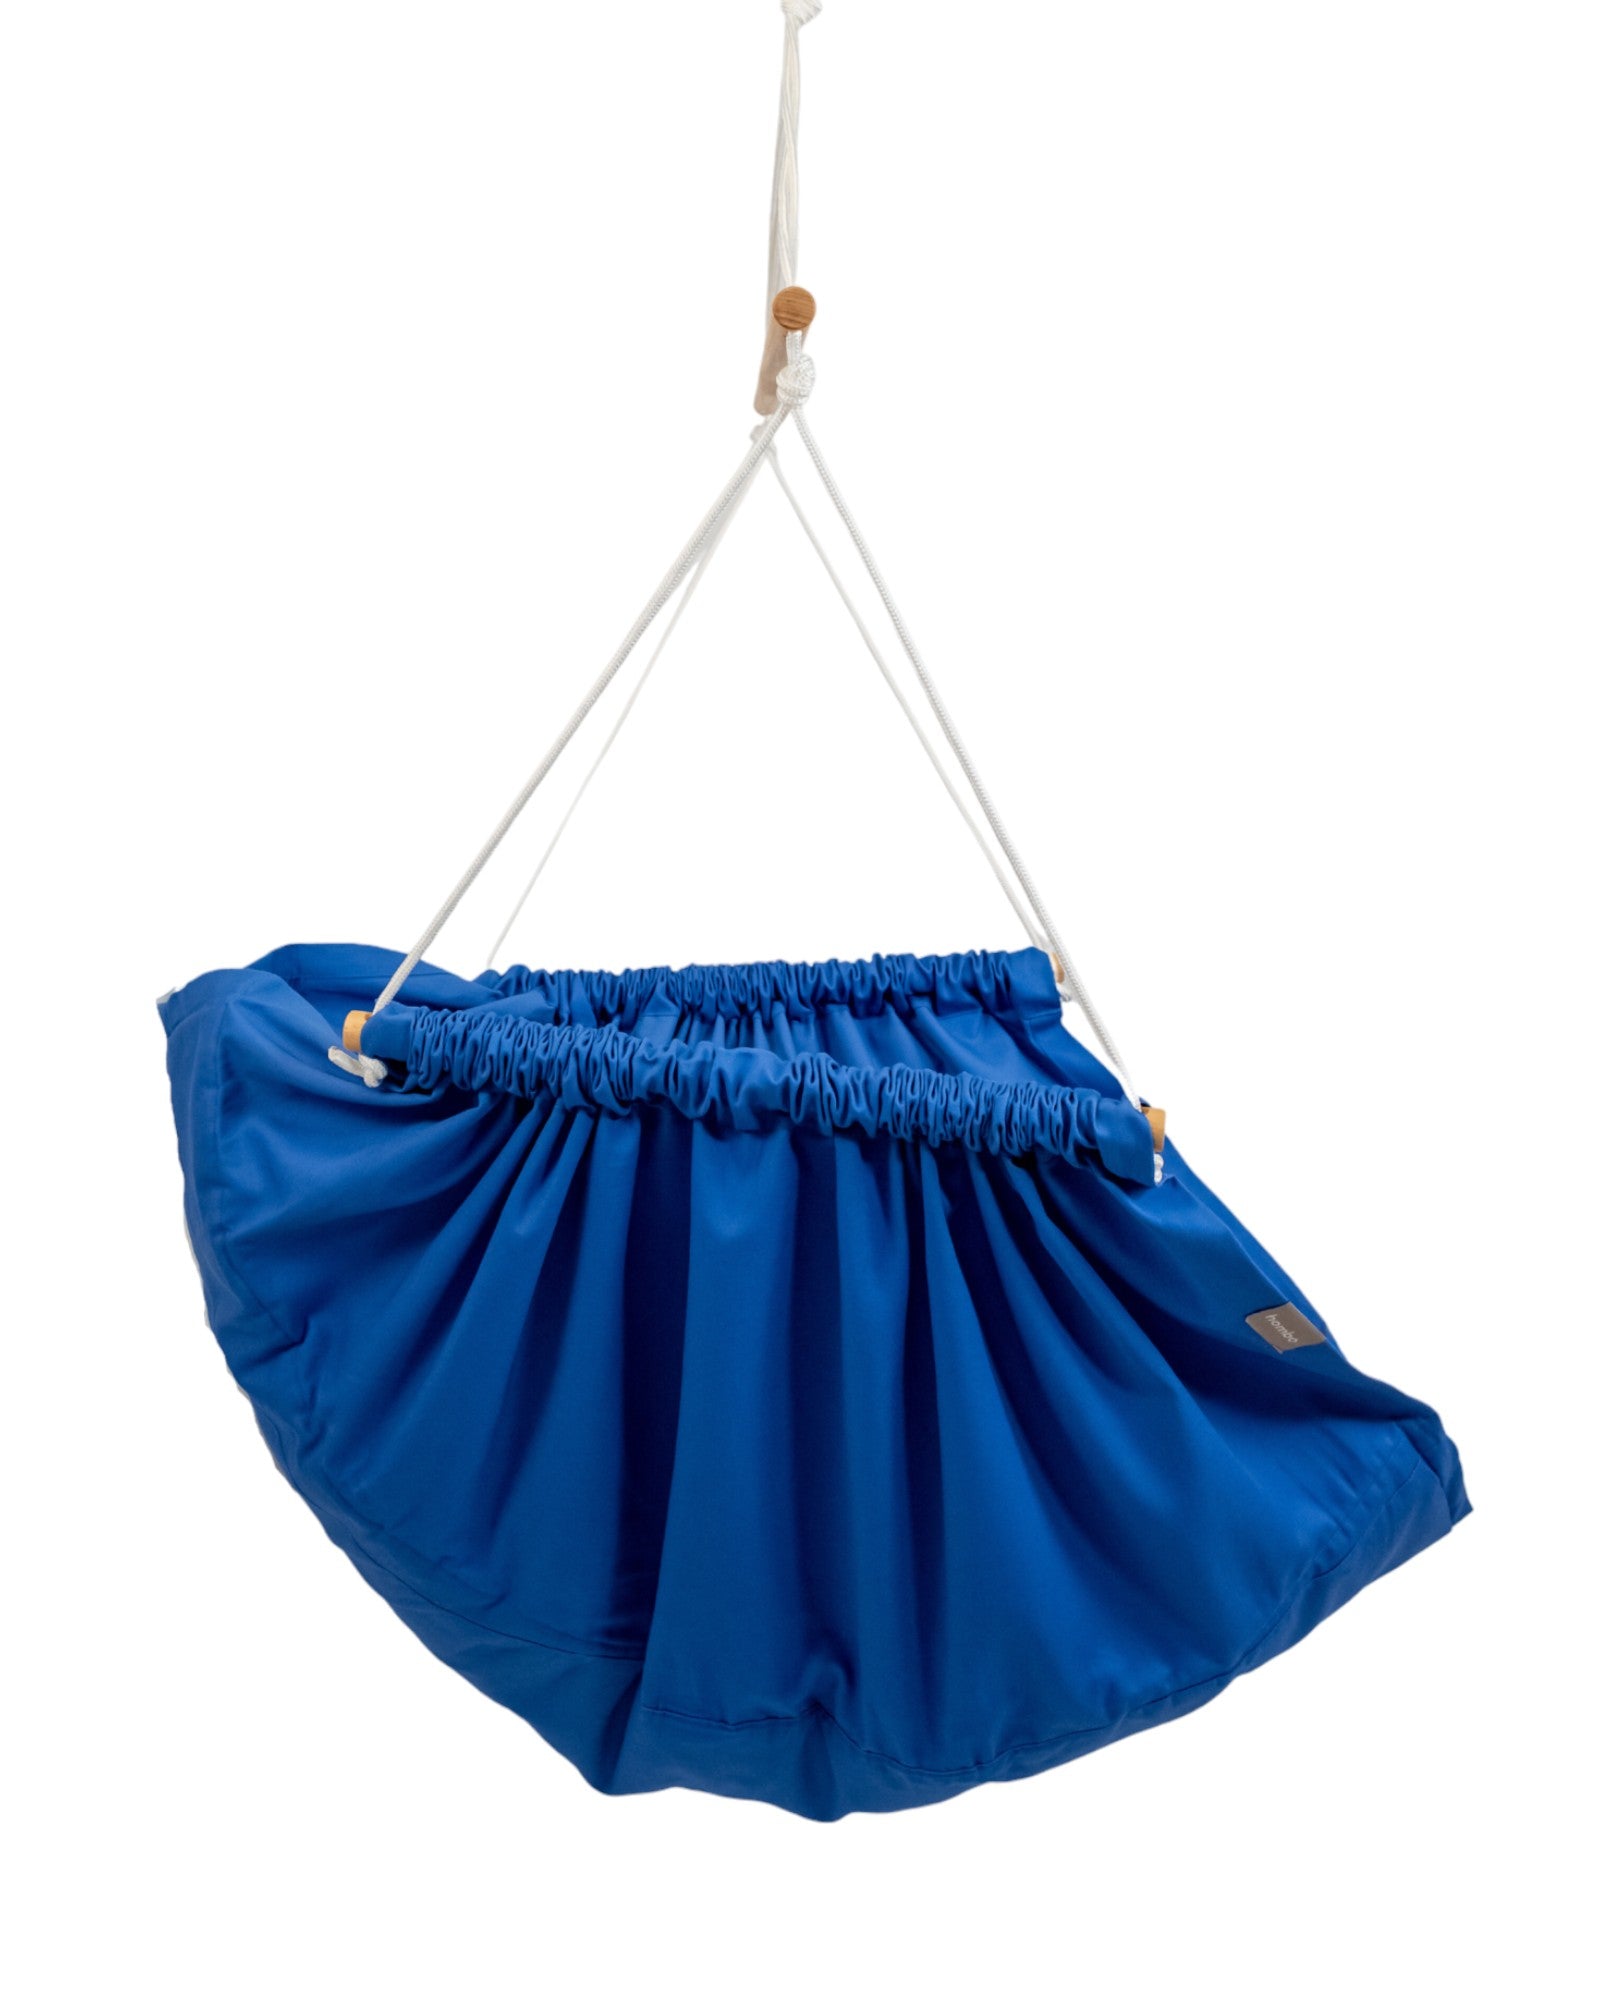 homba® zen hængestol bomuldsblå